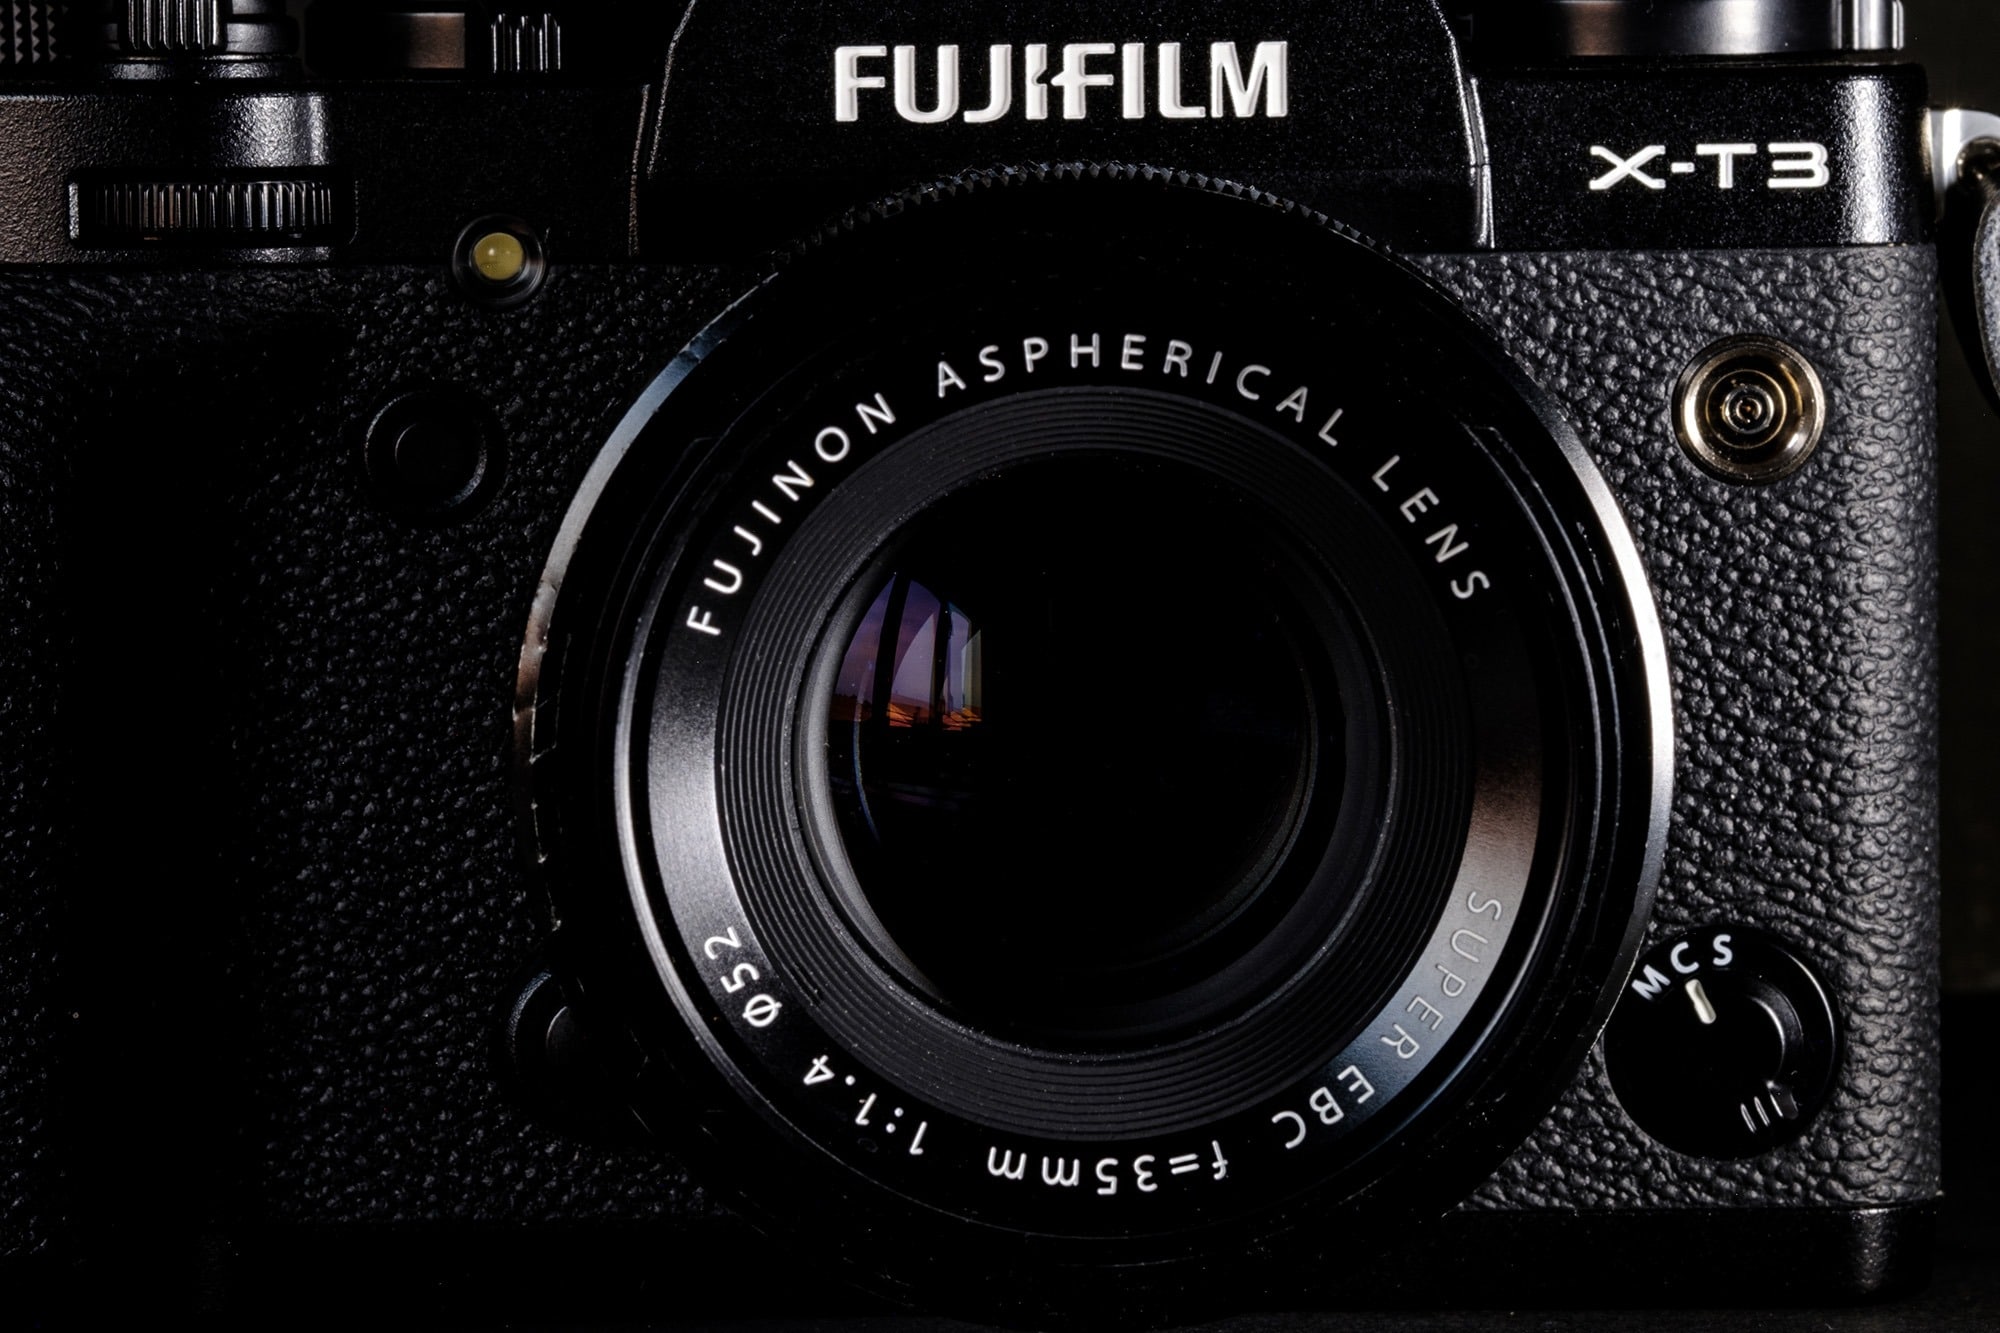 Fujifilm hiện tại không phát triển ống kính Fujinon XF 35mm F1.4 MK II